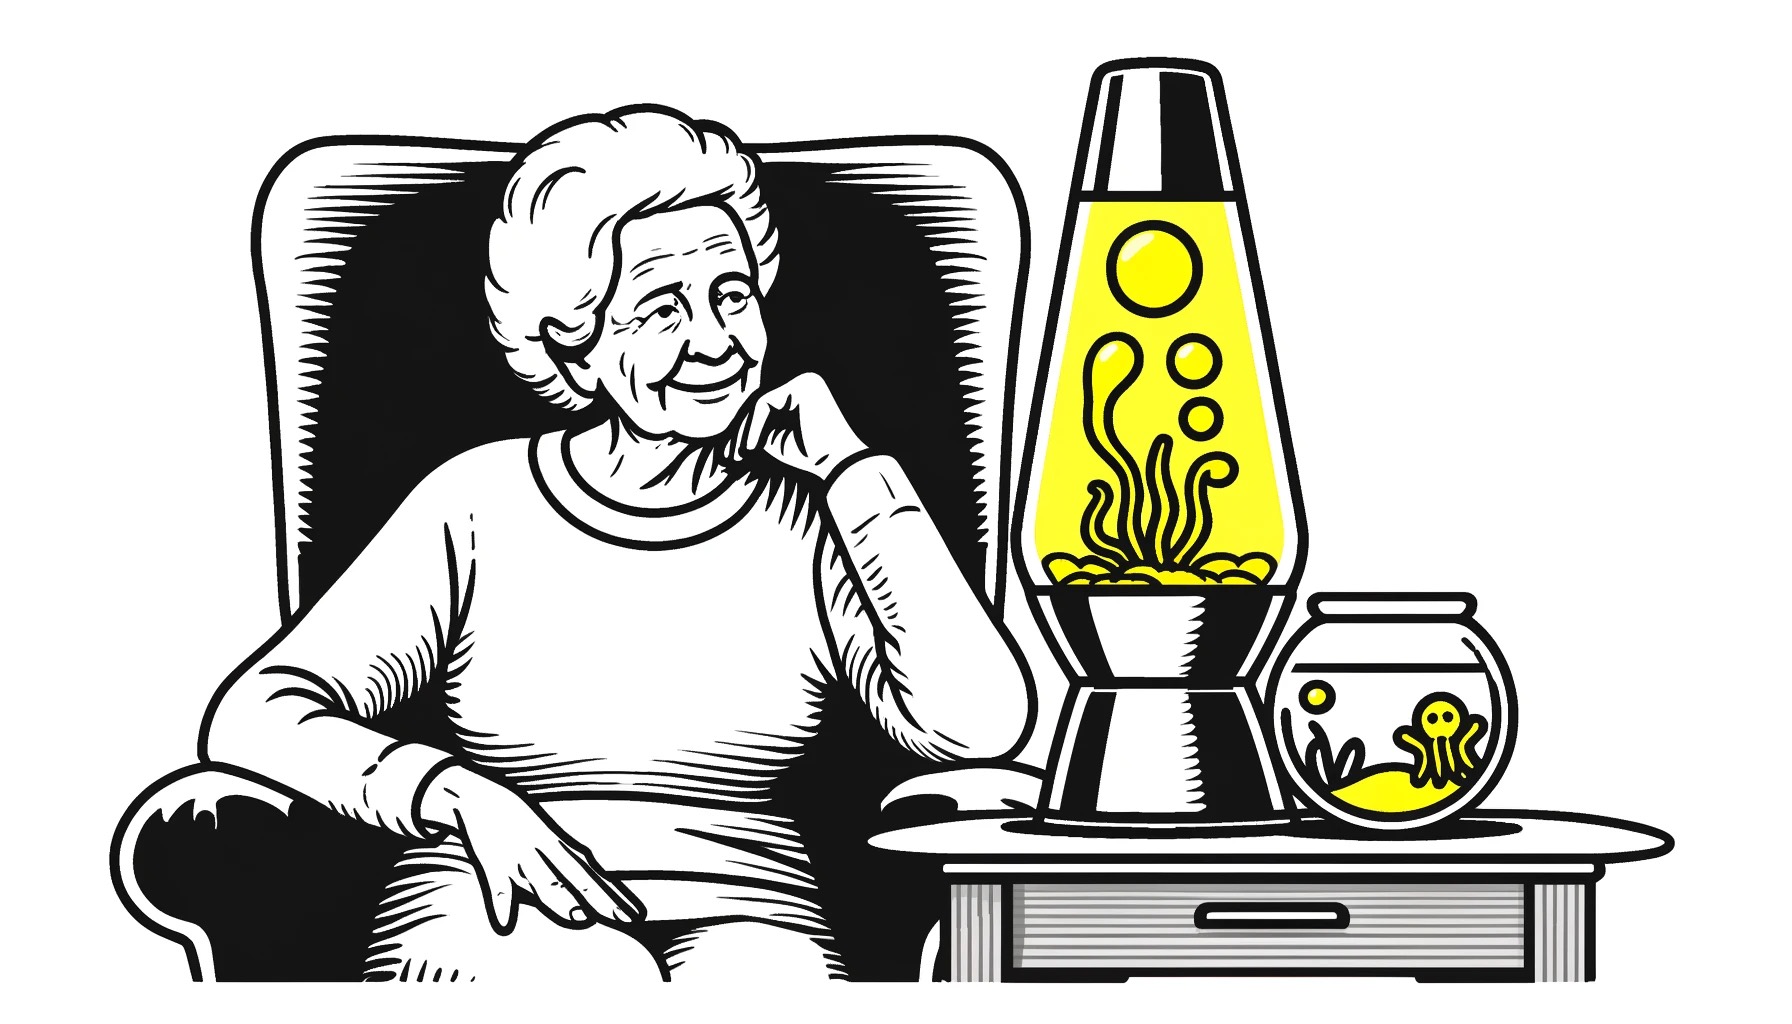 Een oudere vrouw zit comfortabel in een verzorgingstehuis, gefascineerd kijkend naar een lavalamp met gele inhoud naast haar. Op de achtergrond is een vissekom zichtbaar met kleine gele octopussen erin. Haar expressie is gelukkig en geboeid door wat ze ziet